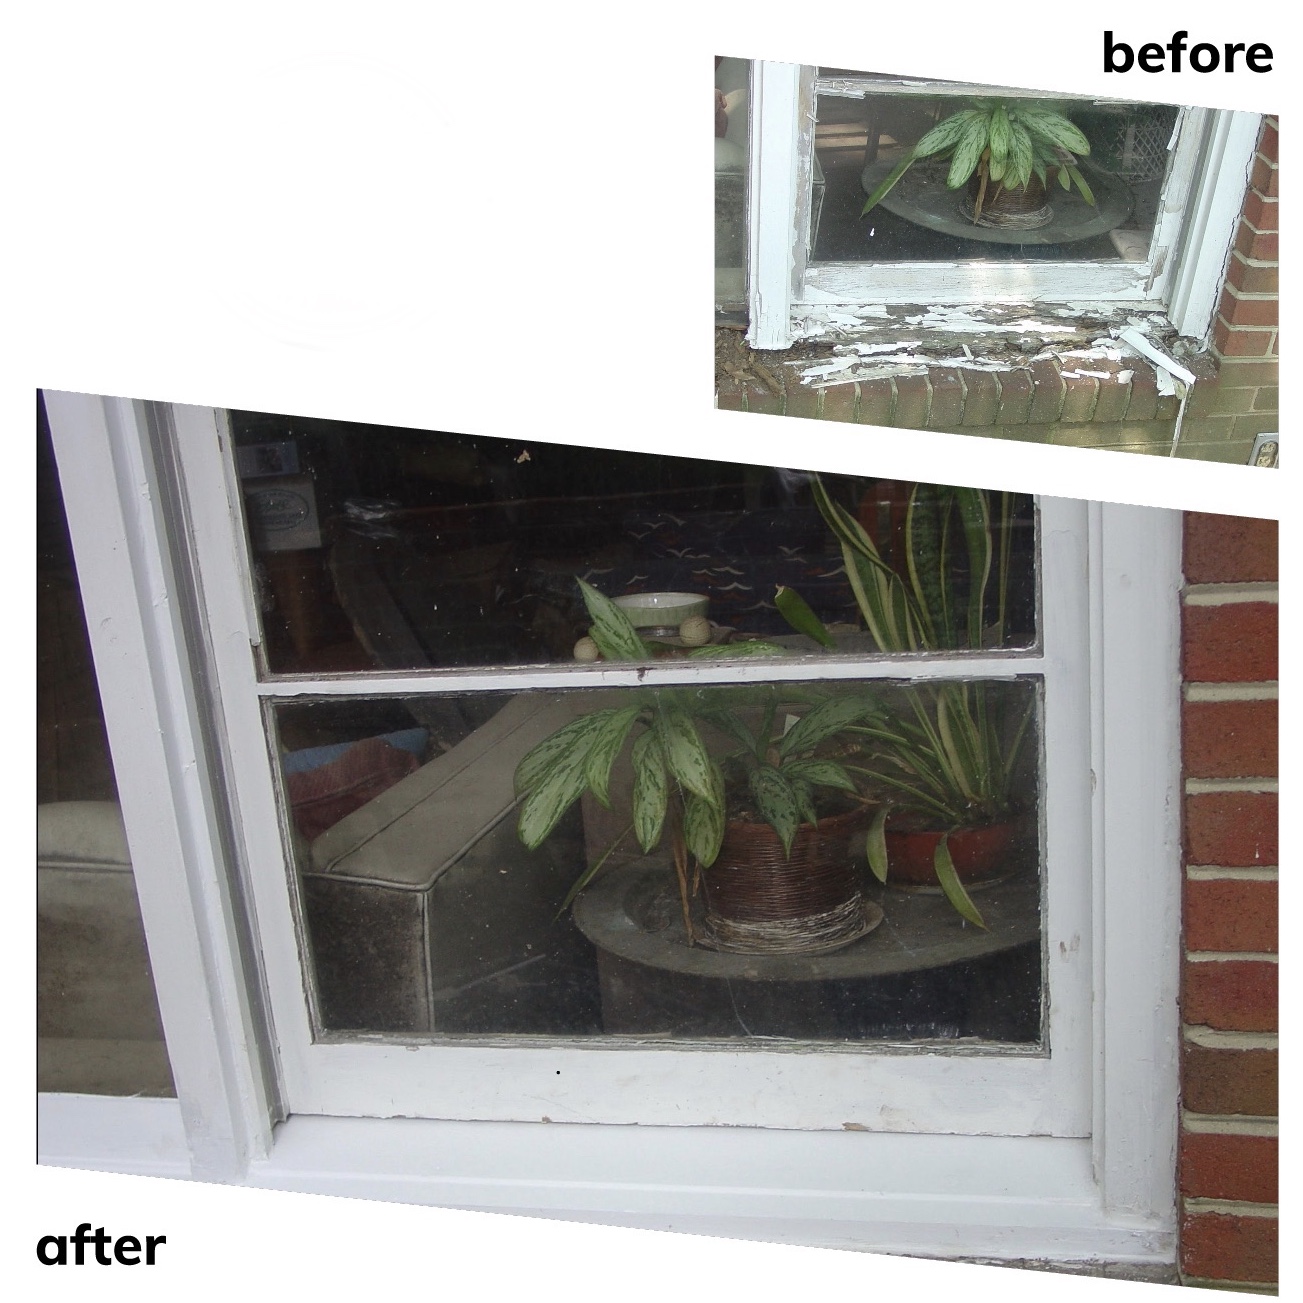 Window repair before&after